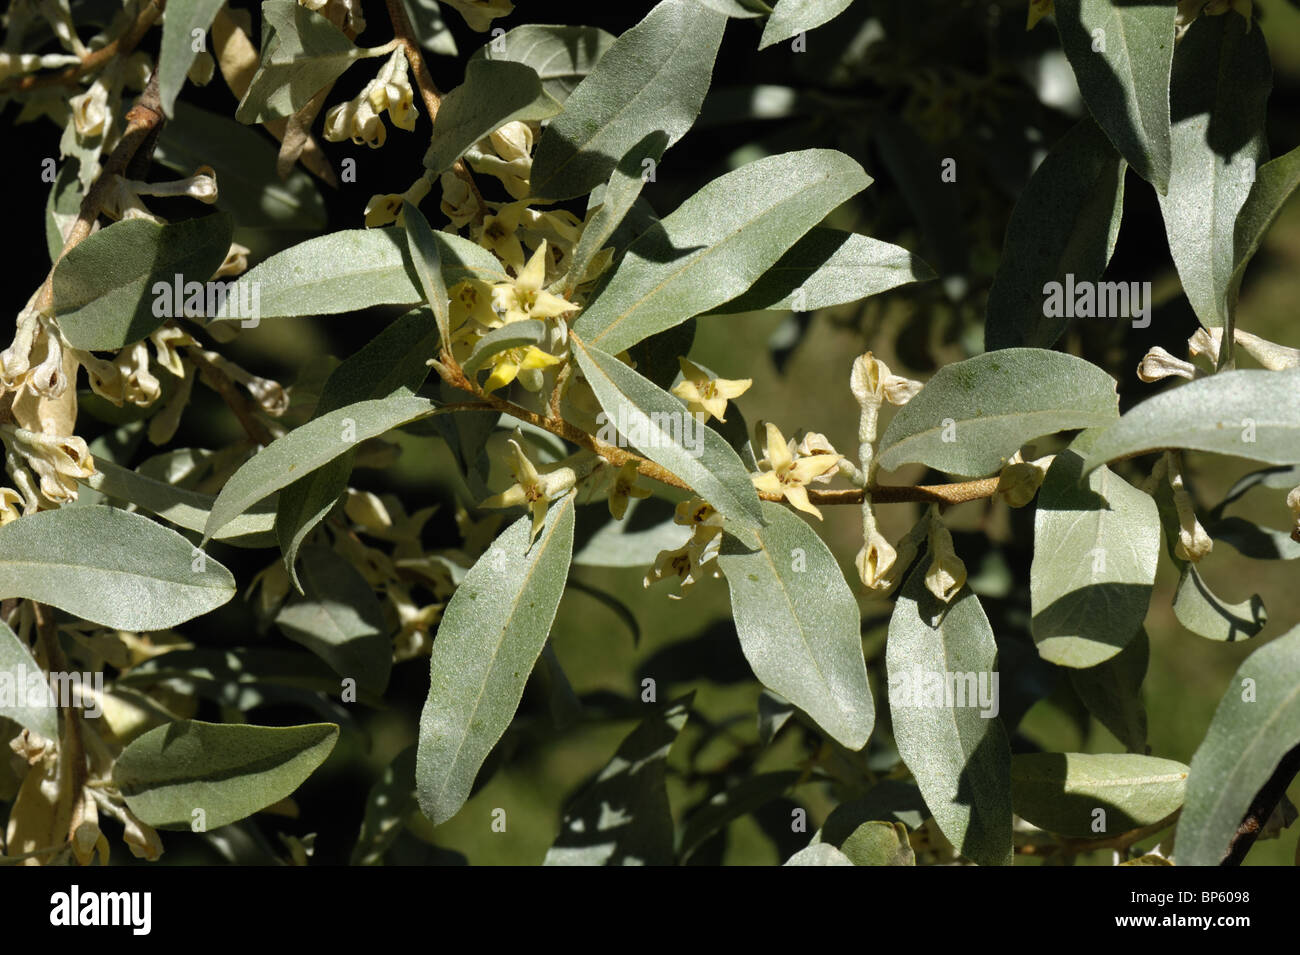 Elaeagnus augustifolia 'Quicksilver' a fragrant flowering garden shrub Stock Photo